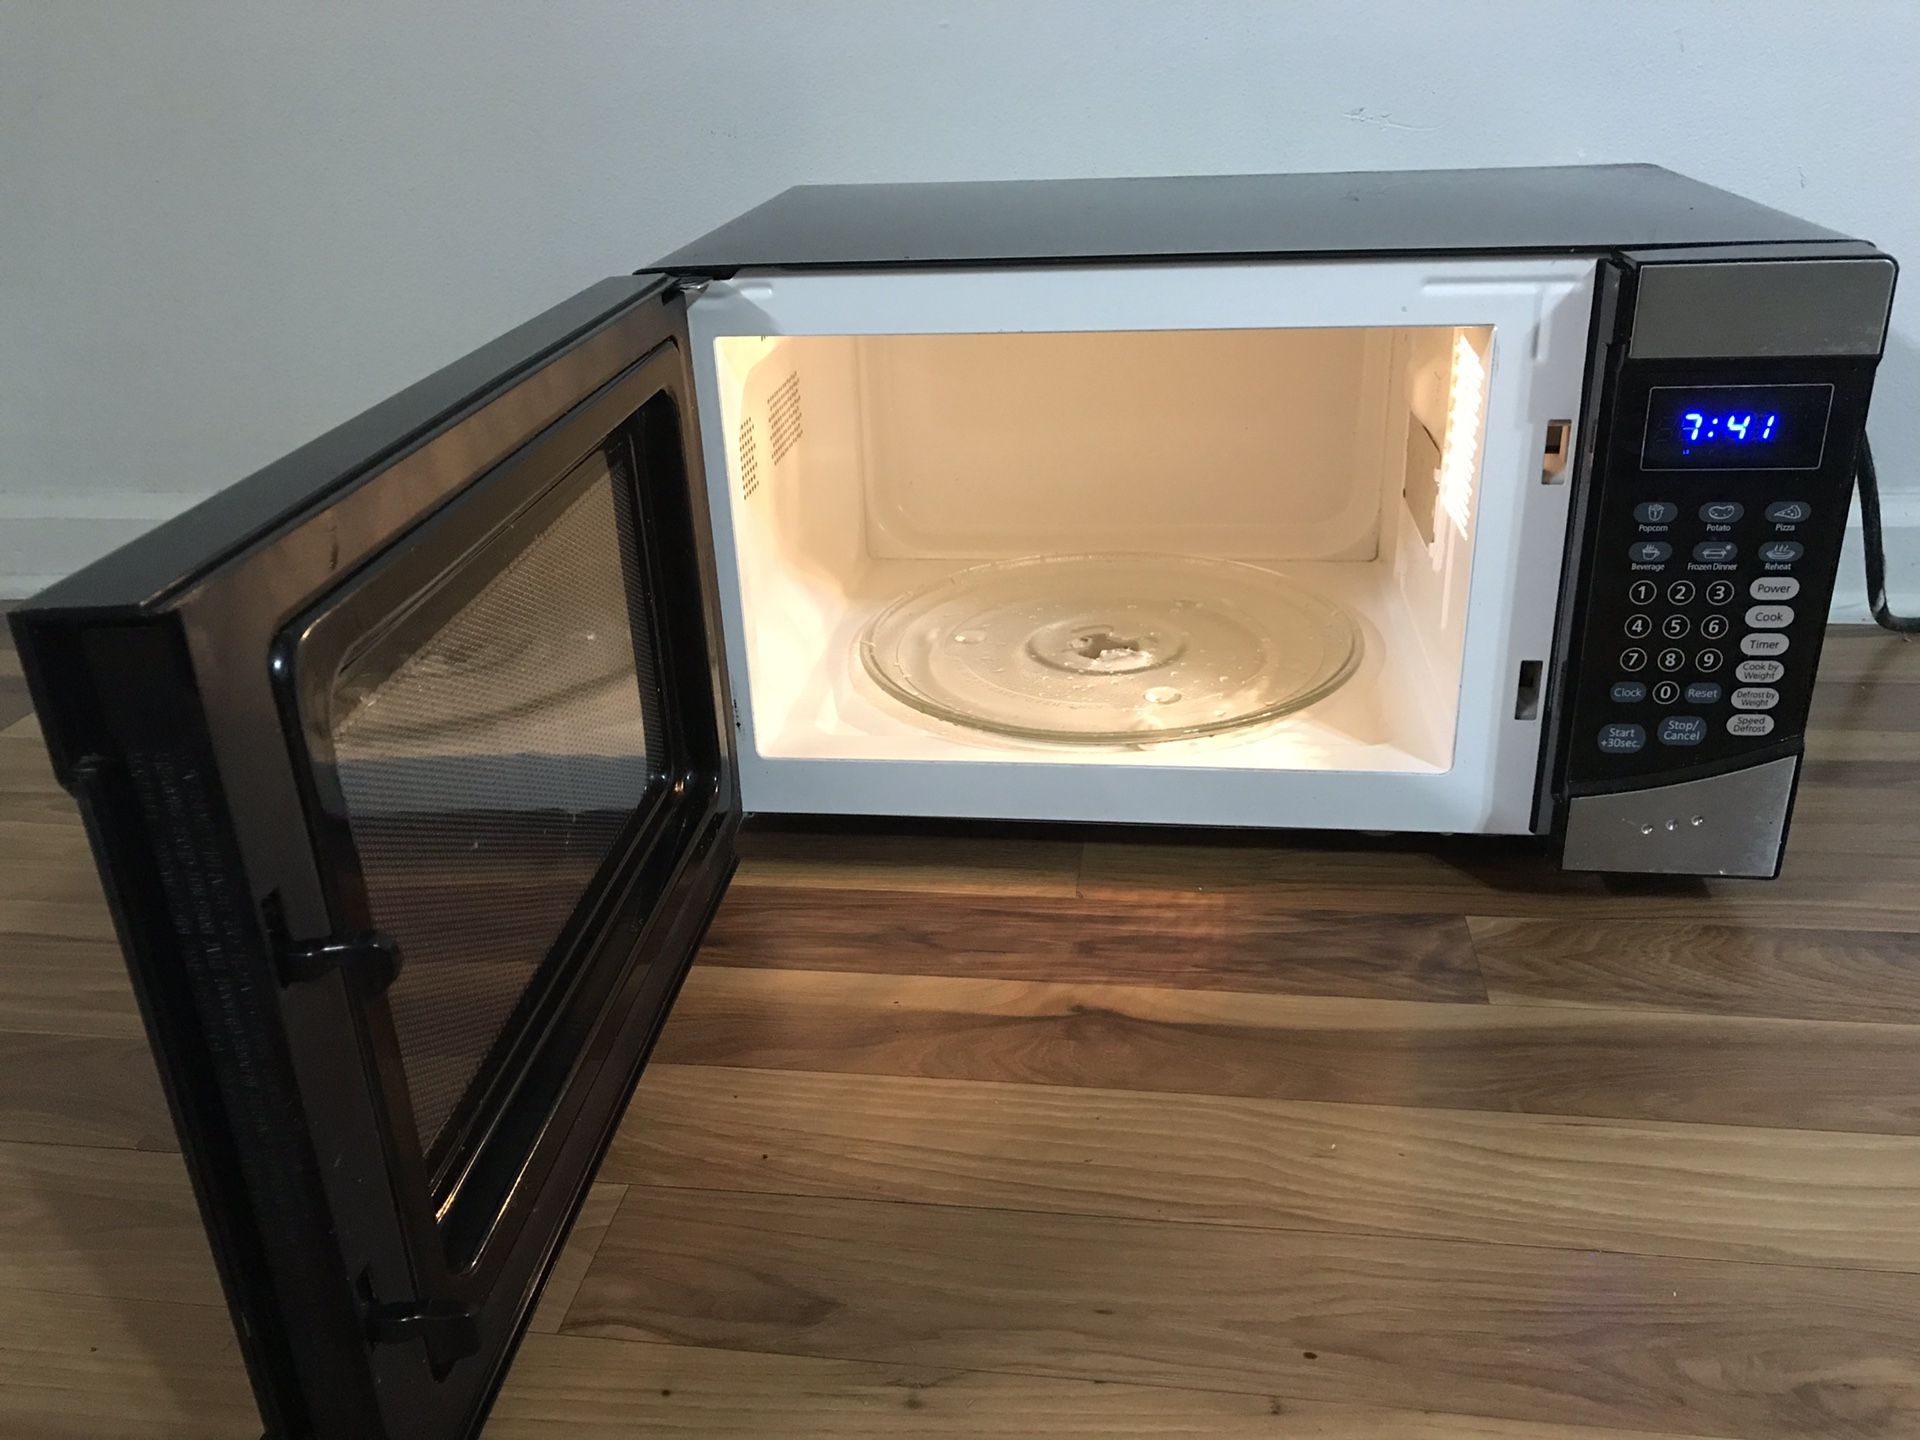 Sunbeam Microwave